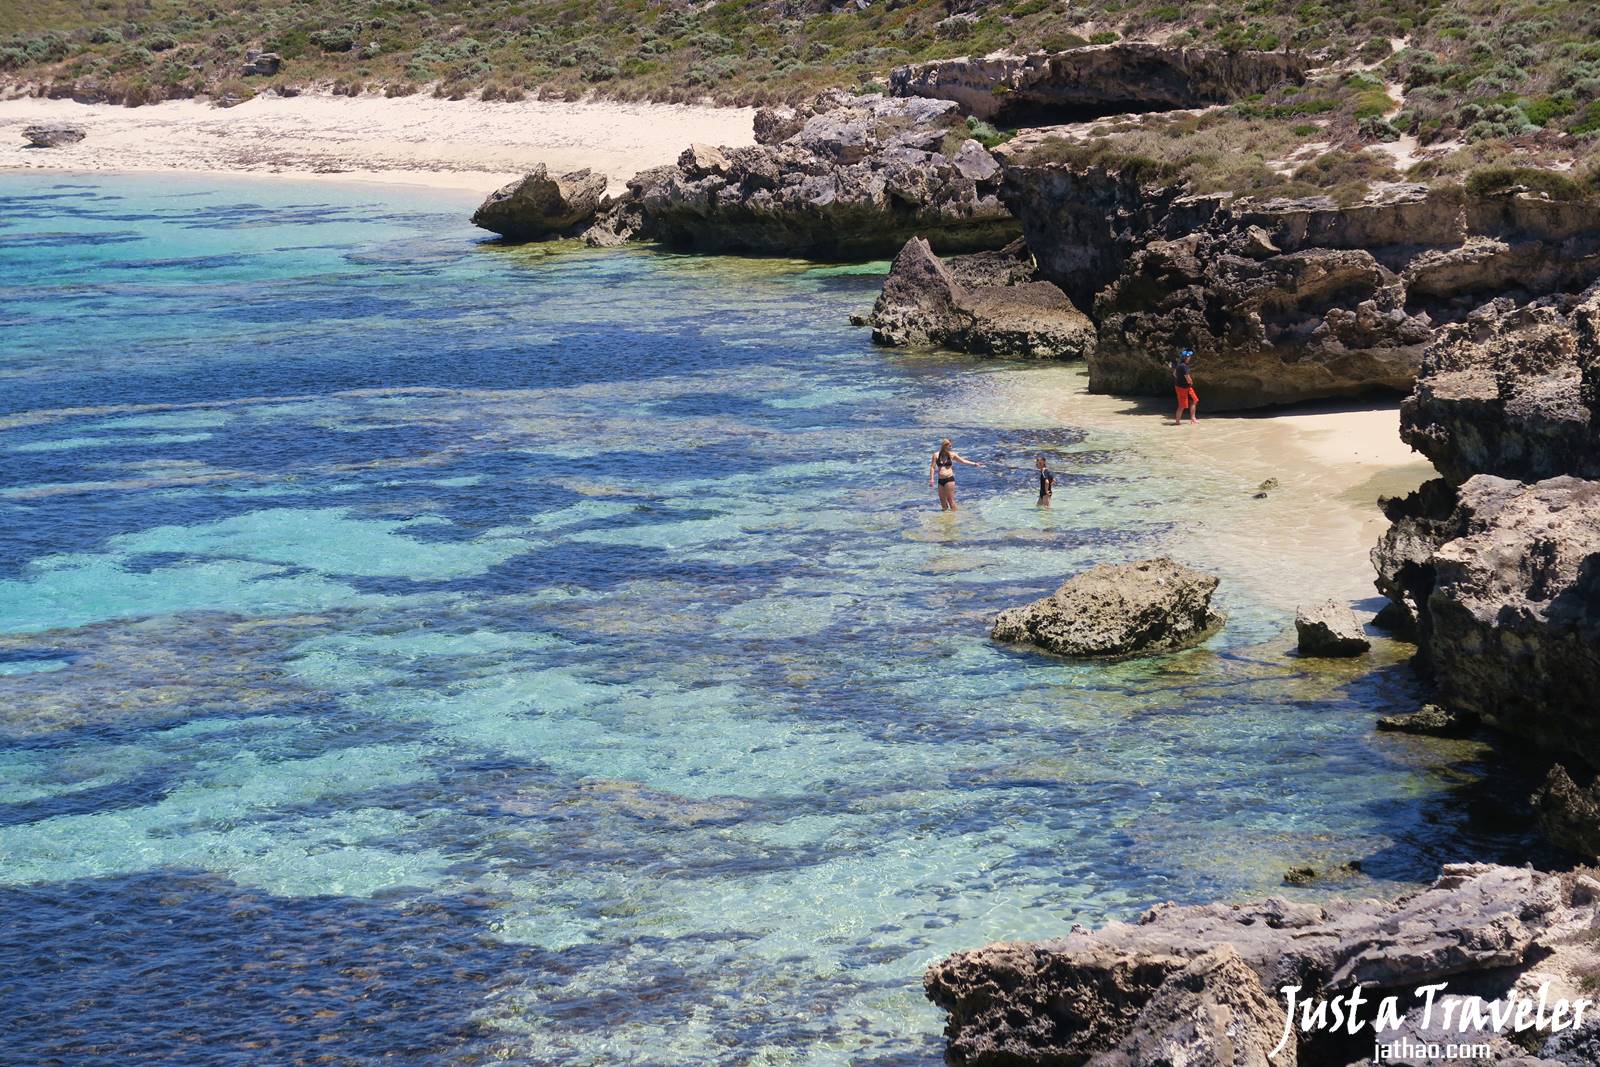 澳洲-西澳-伯斯-景點-羅特尼斯島-Rottnest Island-浮潛-海灘-推薦-自由行-交通-旅遊-遊記-攻略-行程-一日遊-二日遊-必玩-必遊-Perth